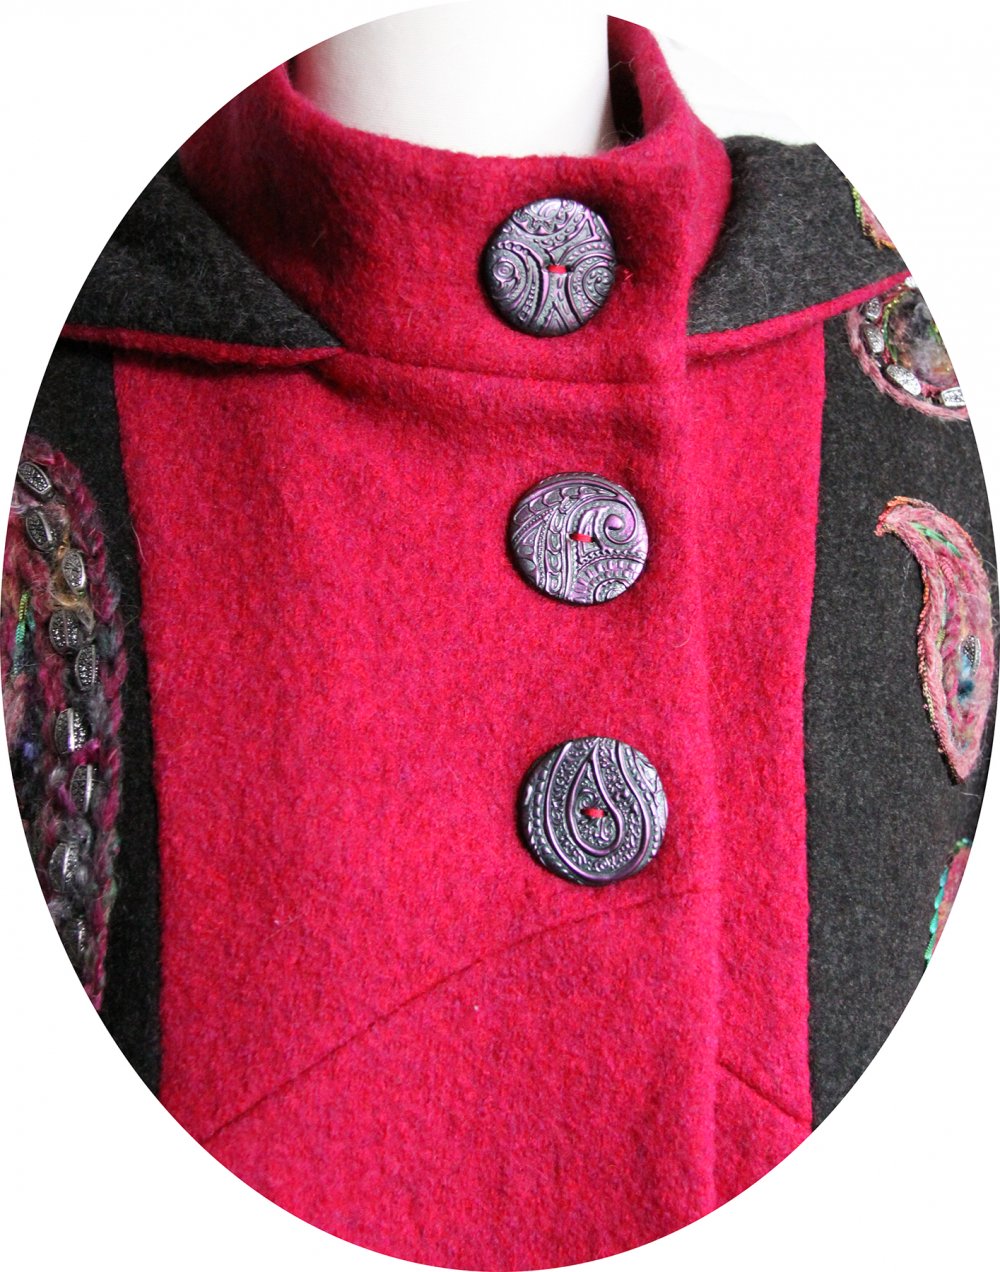 Manteau Spencer de forme trapèze en laine rose et gris foncé brodé à la main--9996112185937